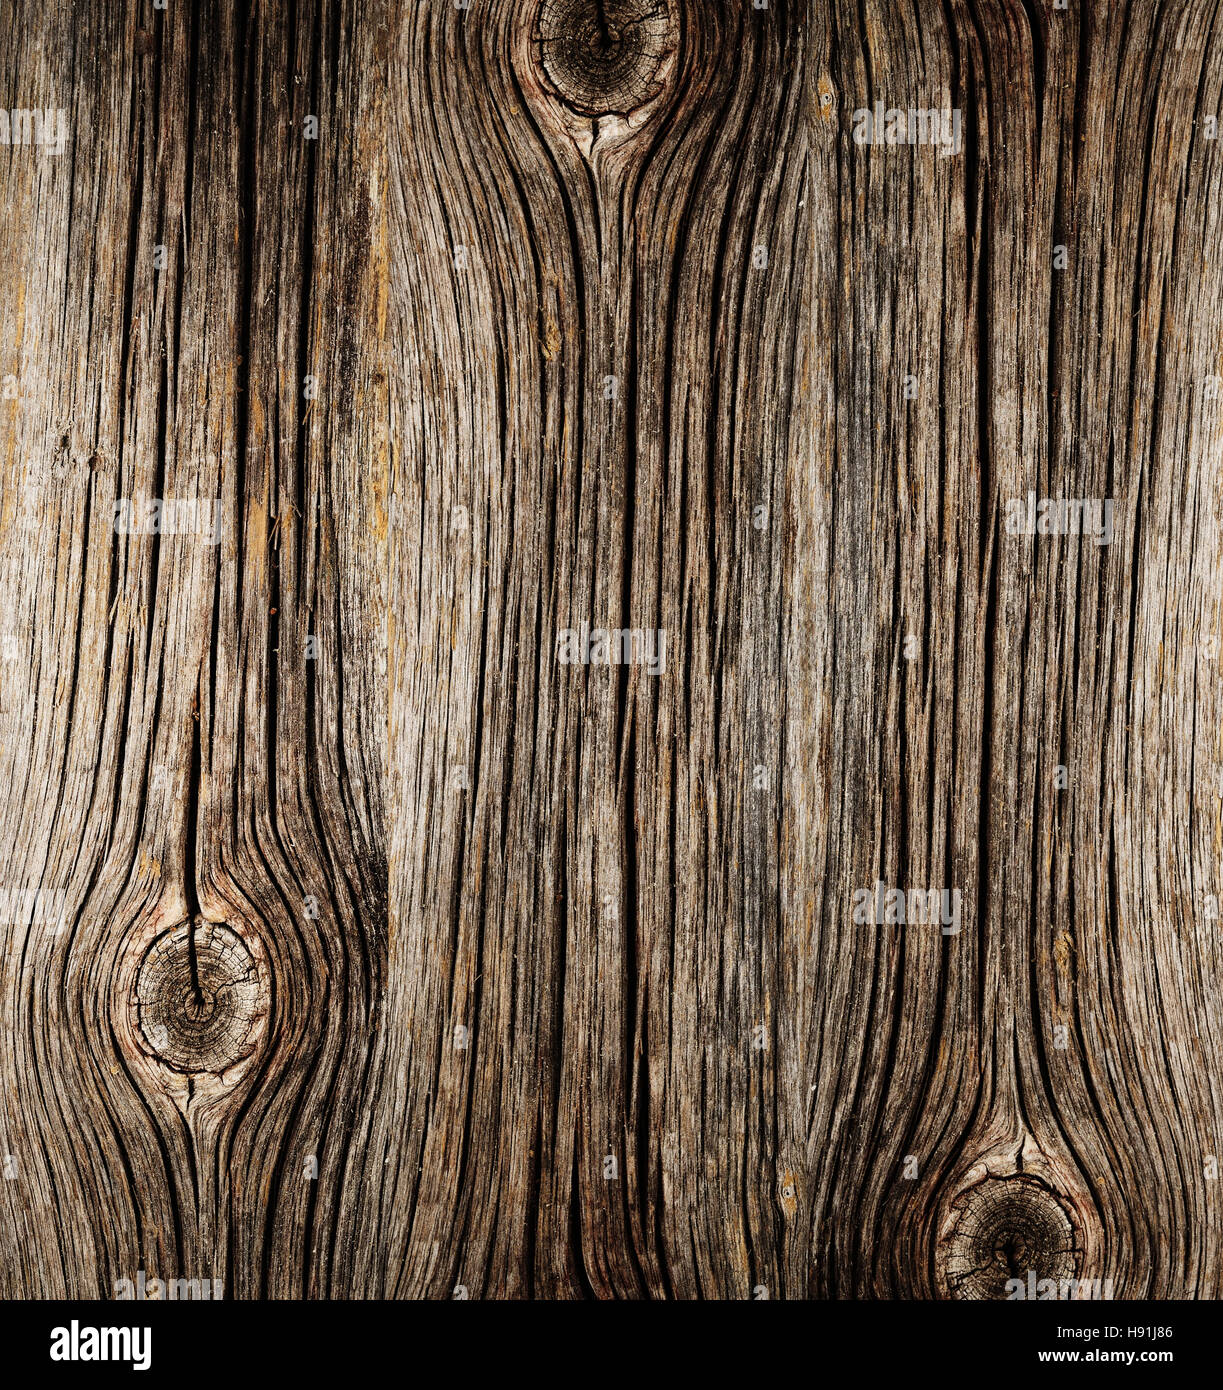 La superficie ruvida del legno vecchio con nodi Foto Stock